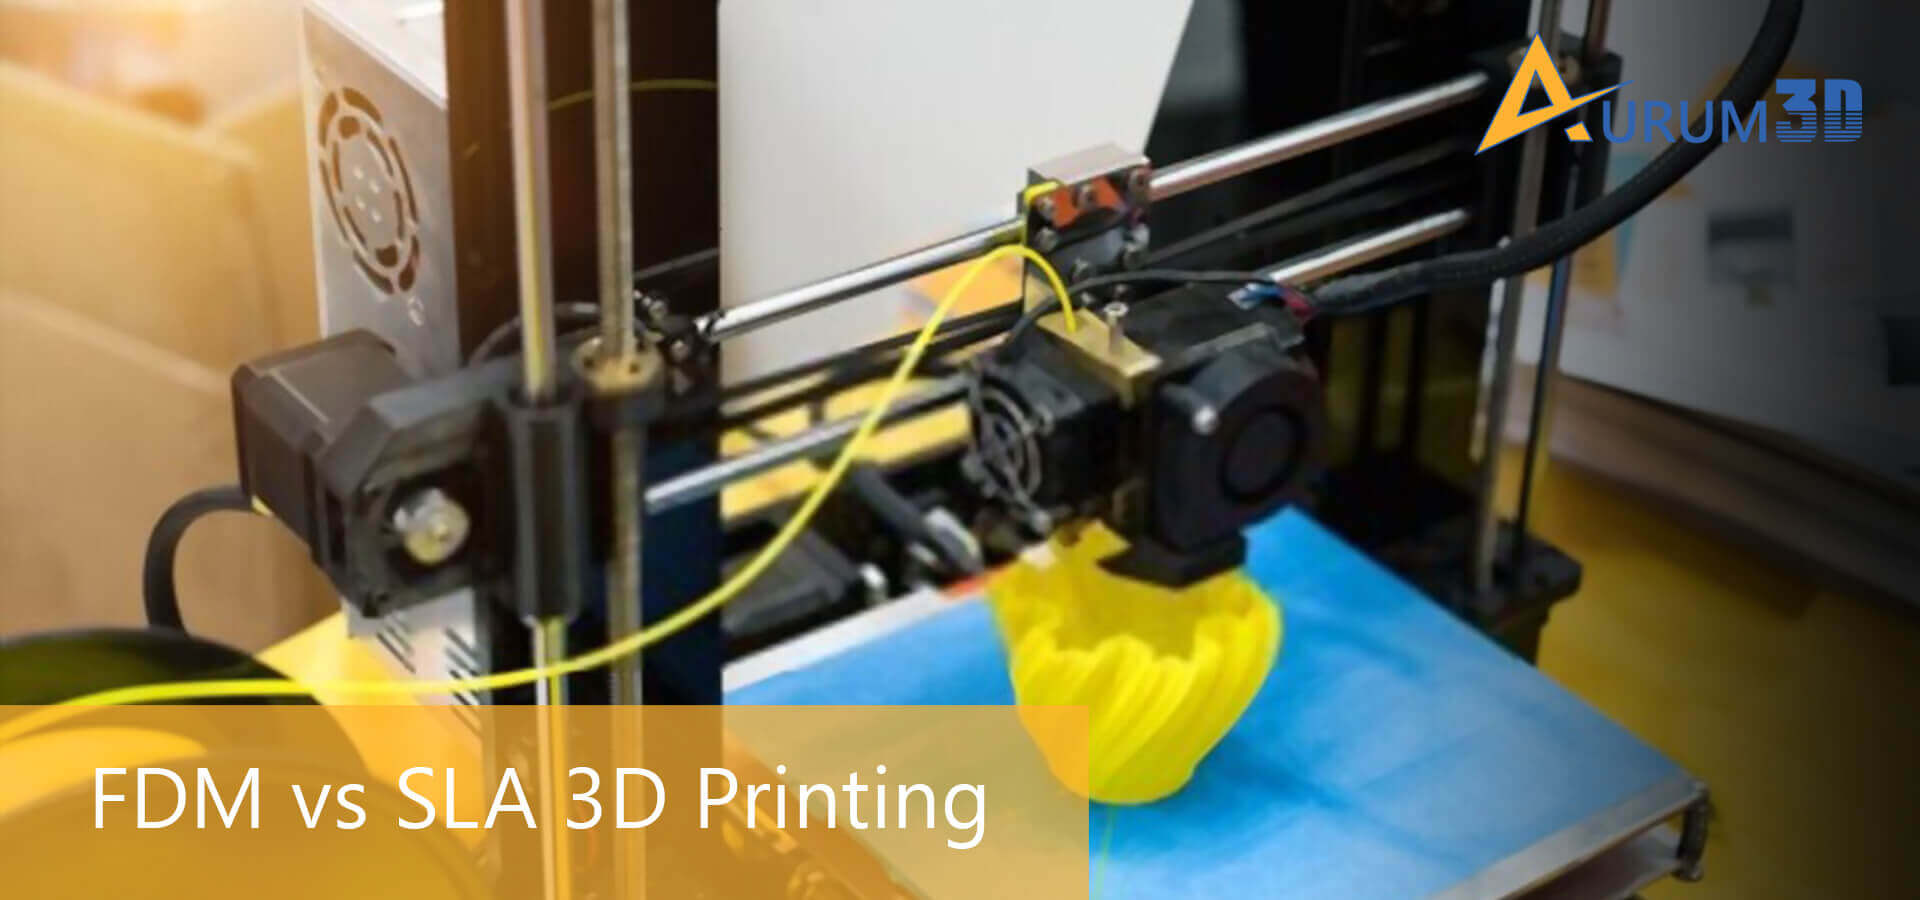 FDM vs SLA 3D Printing